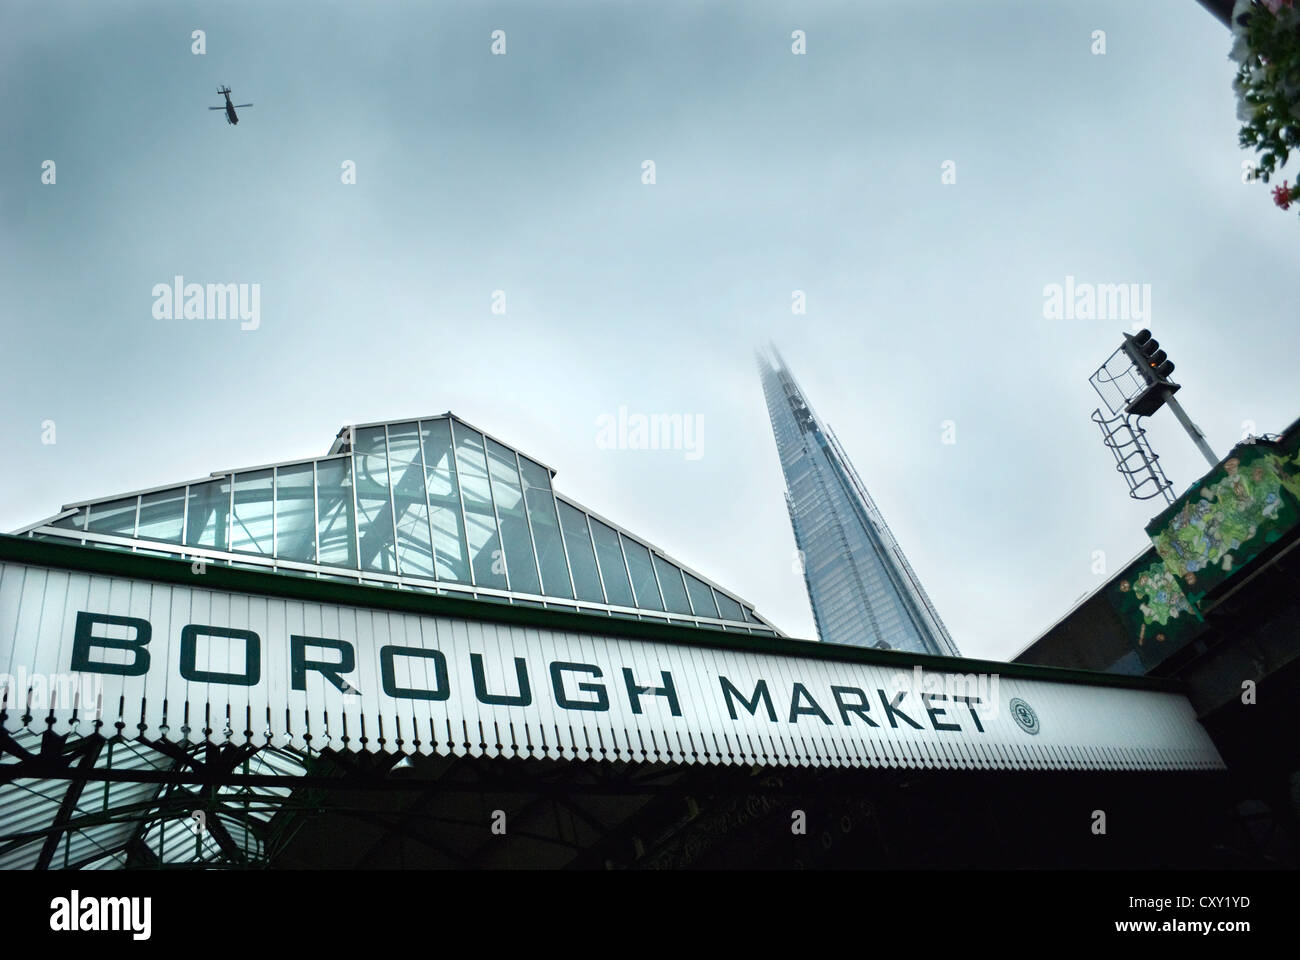 El mercado Borough Market y el rascacielos Shard, Londres, con helicóptero que volaba por encima de la cabeza y un Moody, cielo gris. Foto de stock